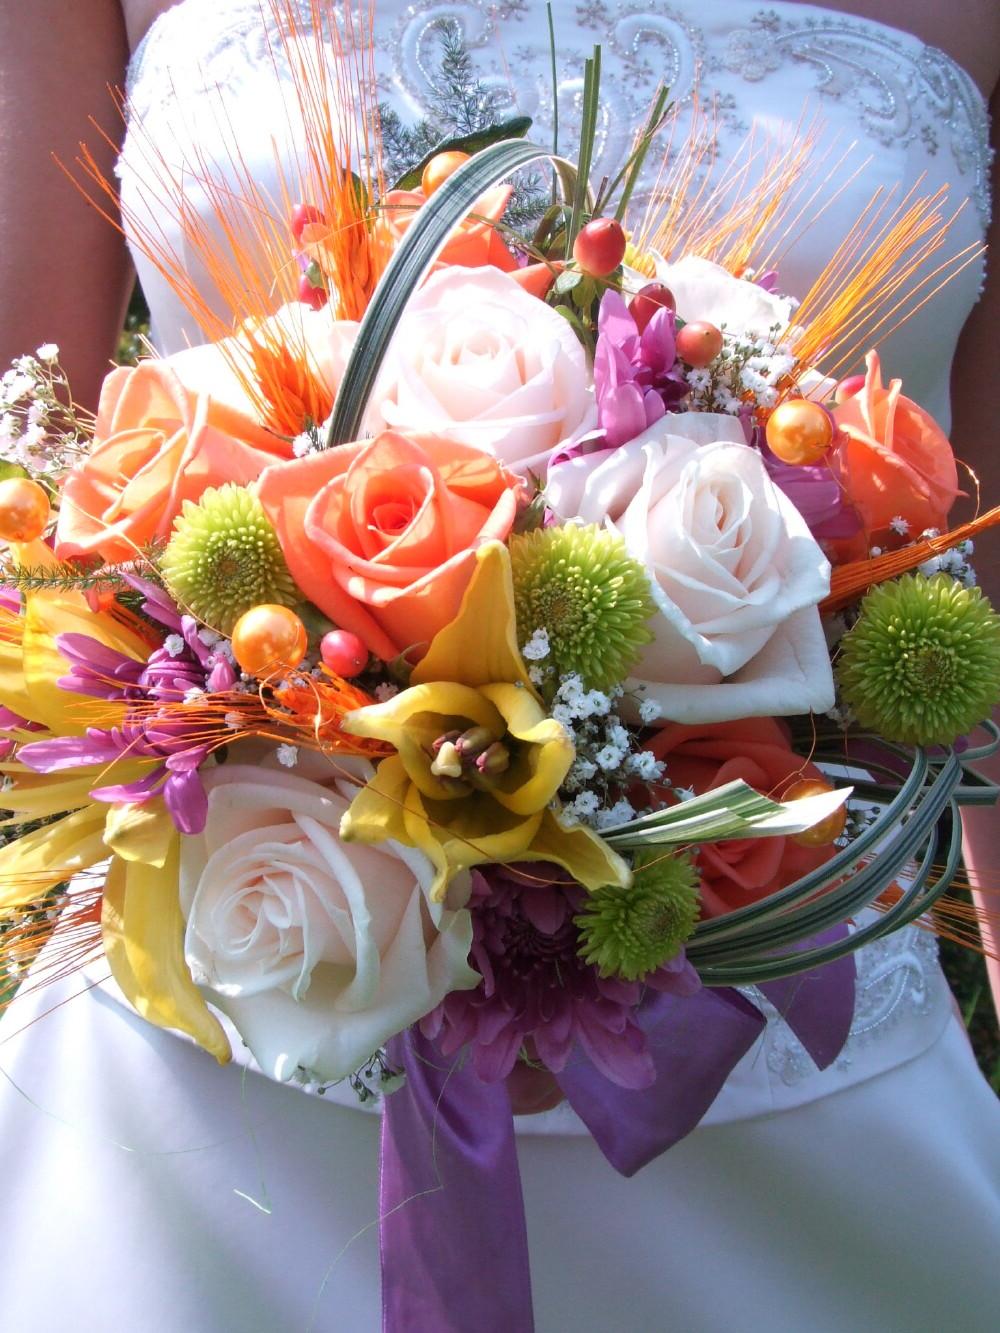 Wedding flowers arrangement is